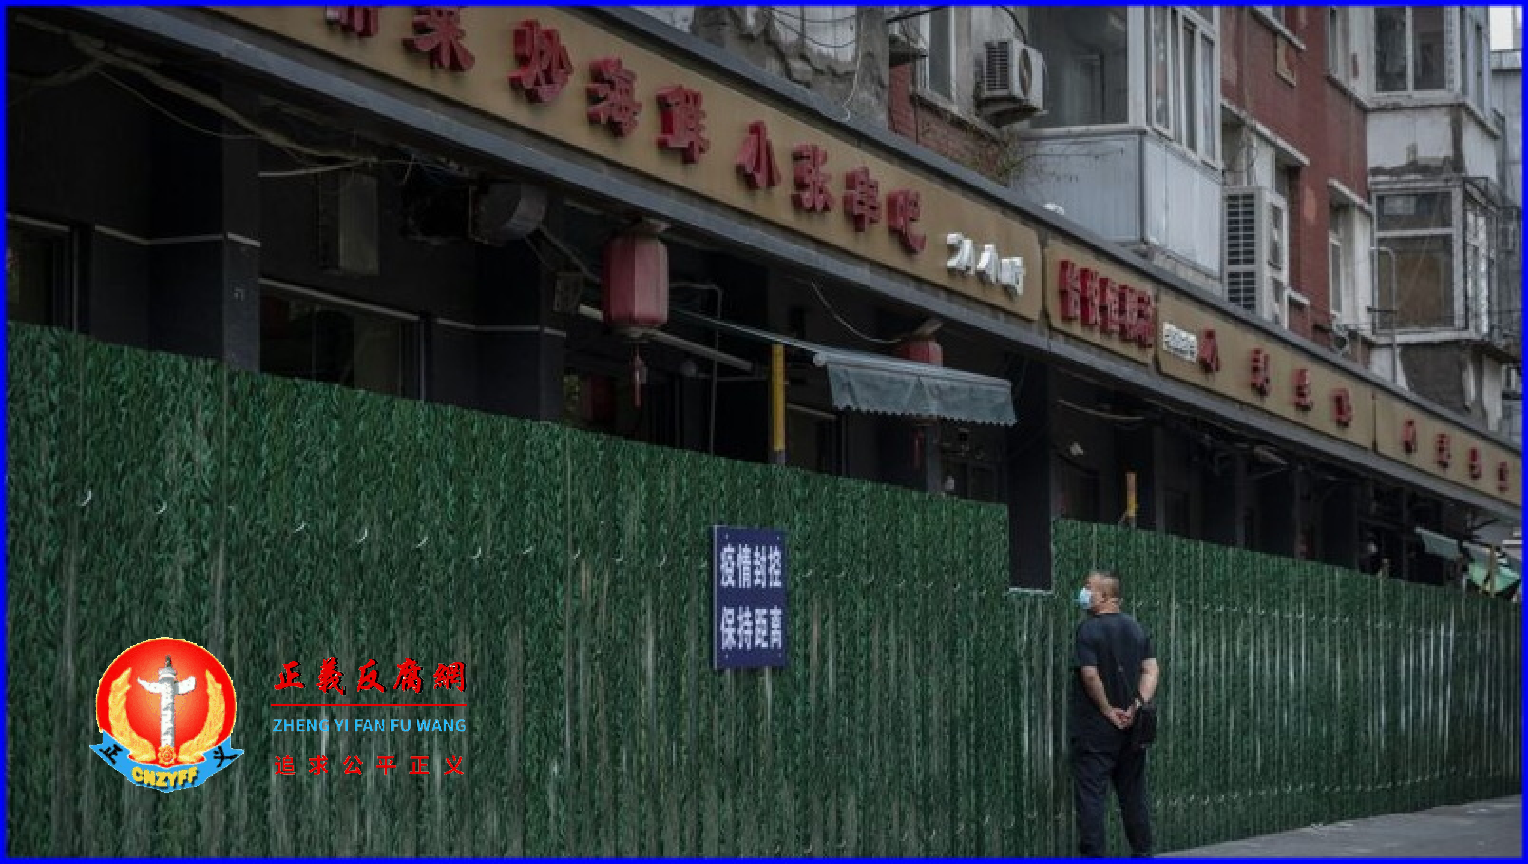 示意图。北京市街头被封控的店面。.png